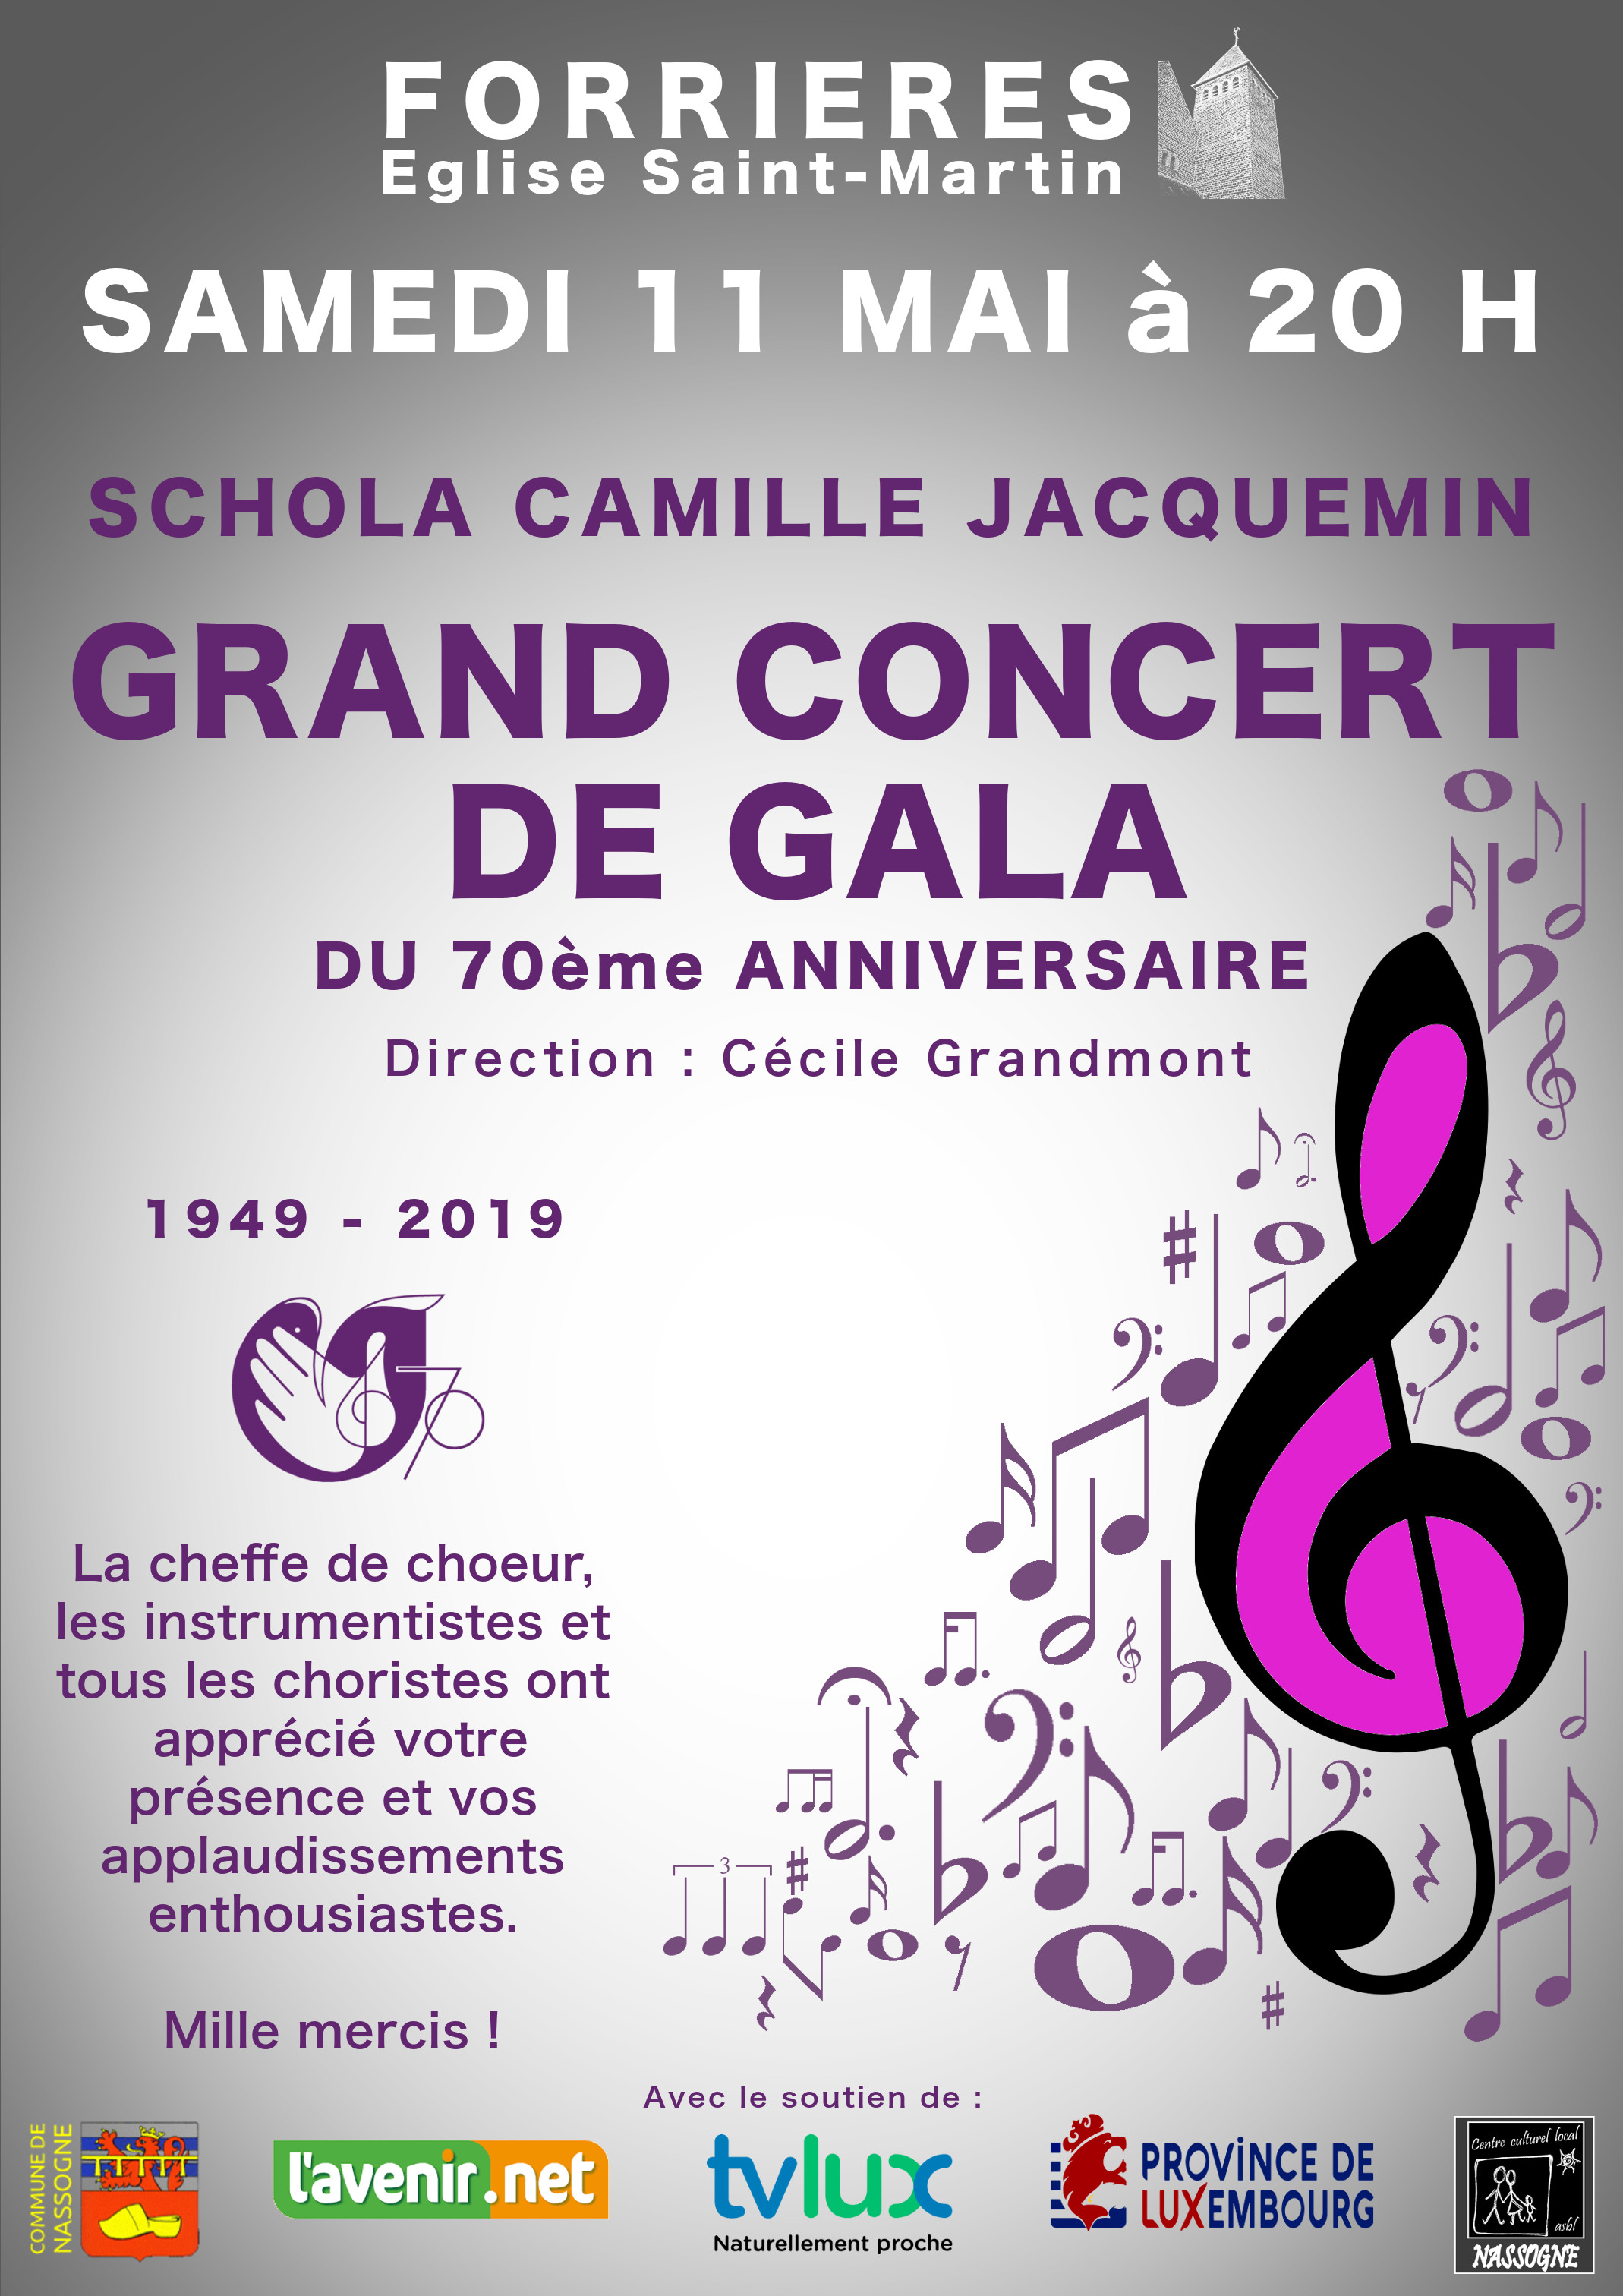 11 mai 2019 à Forrières, grand concert de gala de la Schola Camille Jacquemin à l'occasion du 70ème anniversaire de sa fondation